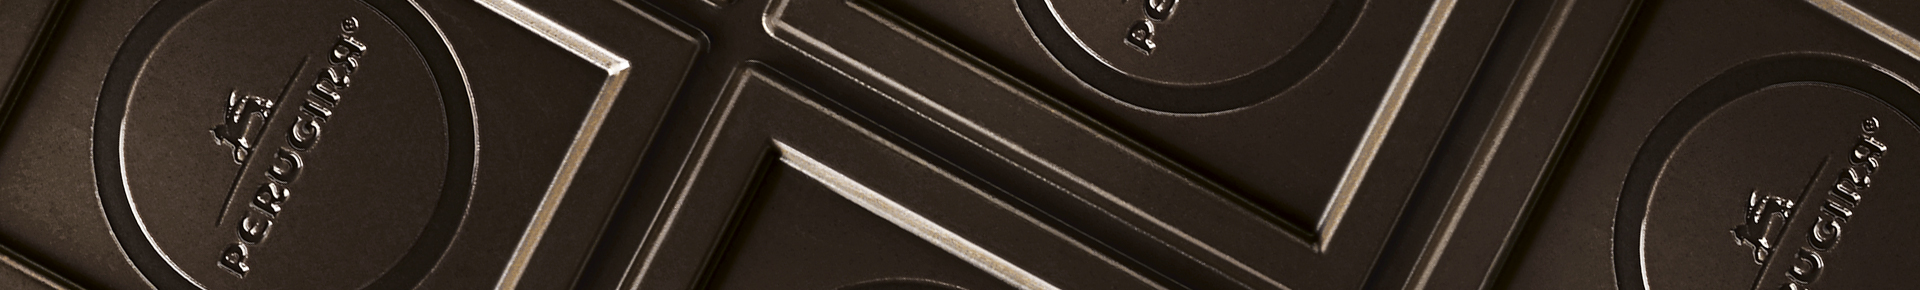 Perugina Nero tavoletta cioccolato fondente e mandorle